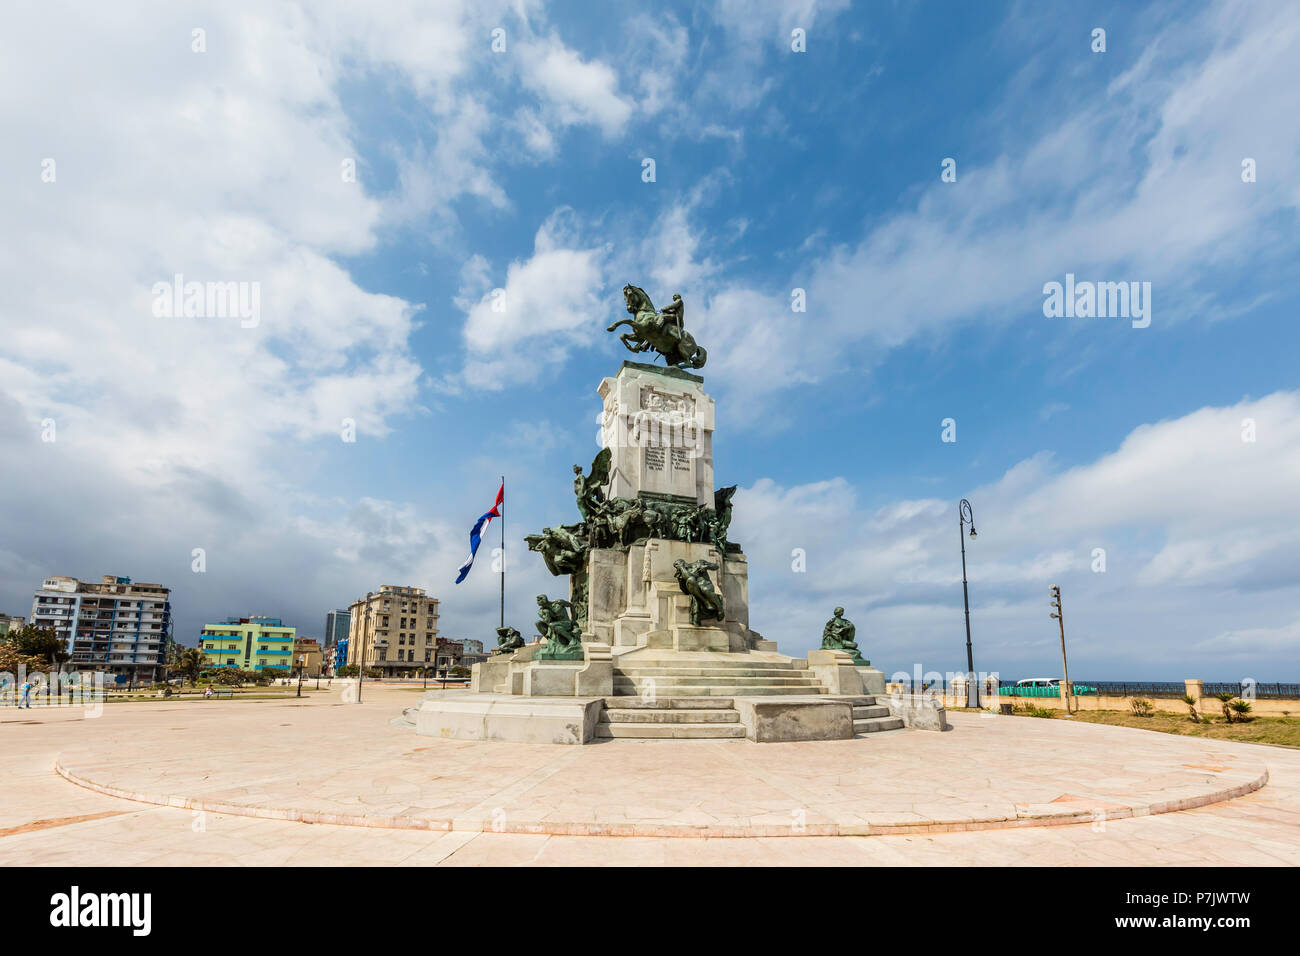 Monumento al Mayor General Antonio Maceo, Havana, Cuba Stock Photo